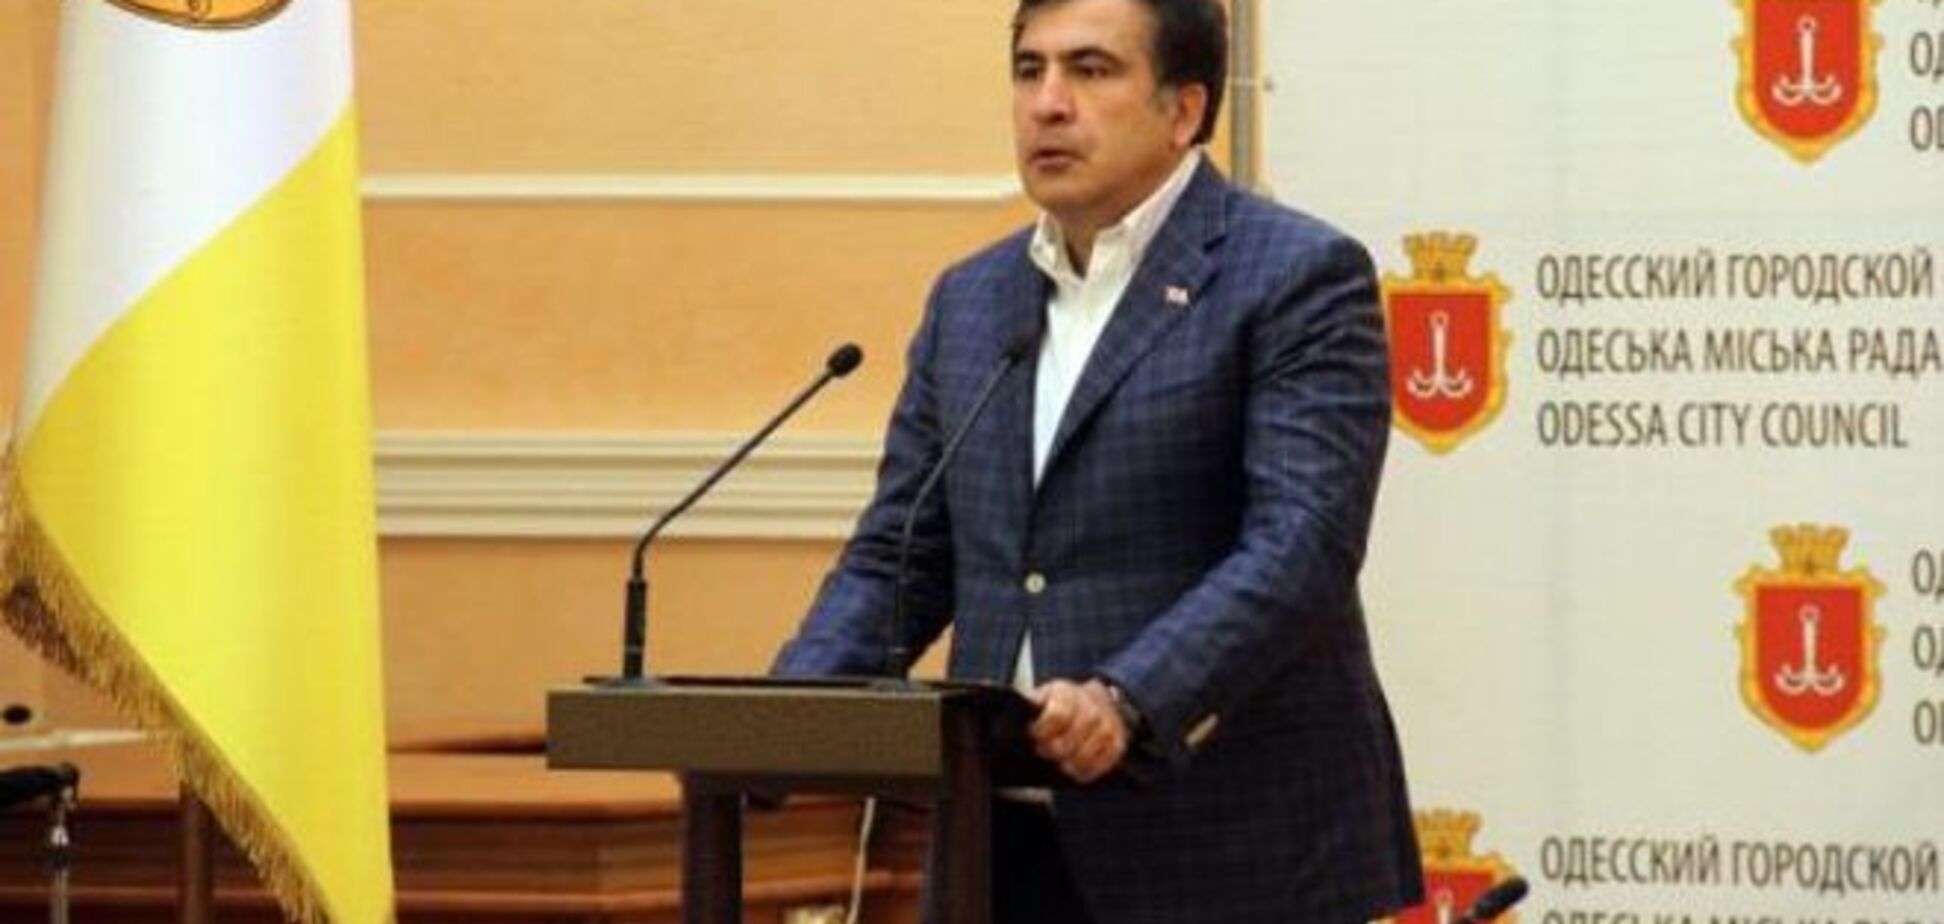 Две тысячи тунеядцев. Саакашвили рассказал о службе занятости в Одессе